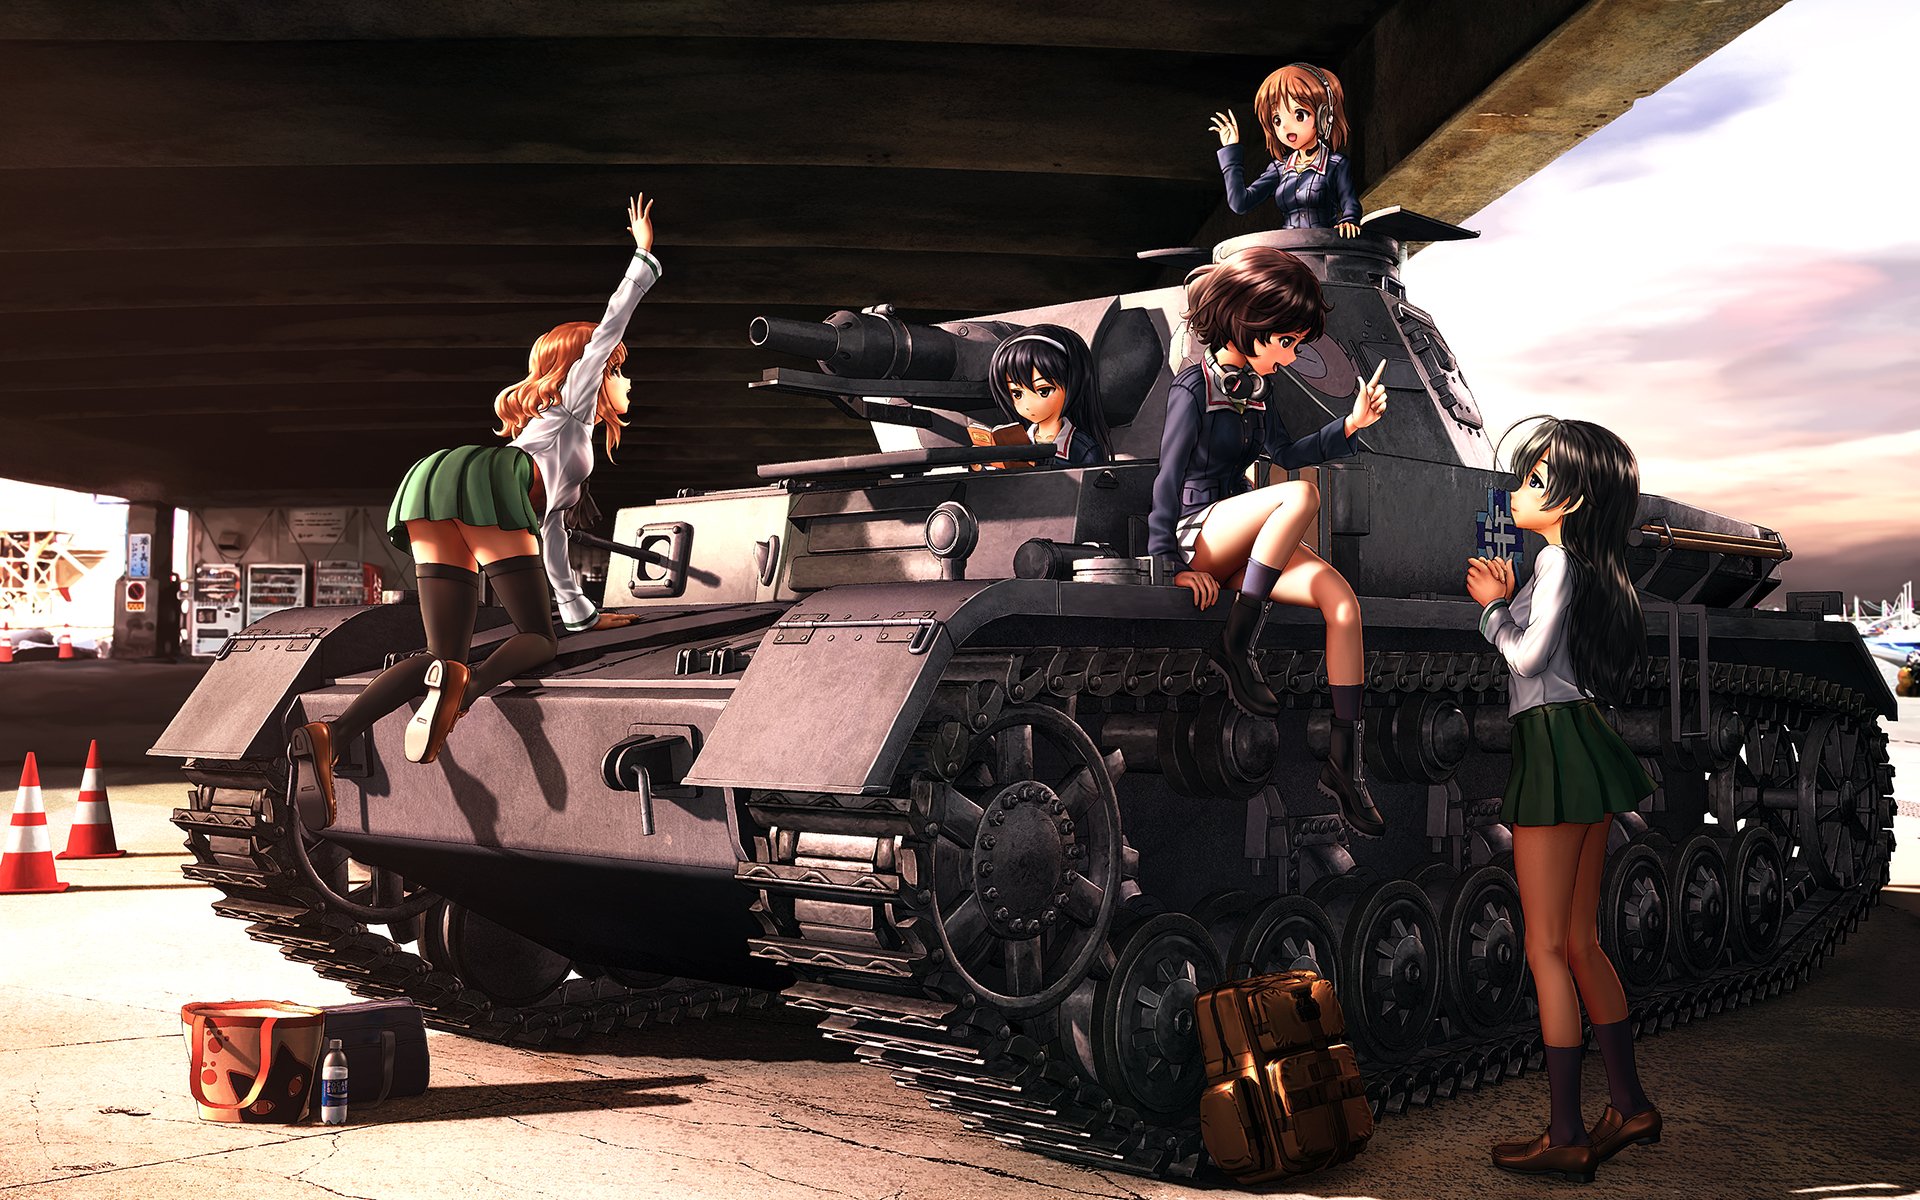 Anime Girls Und Panzer Panzer Wallpaper Panzerkampfwagen Panzer Girls My Xxx Hot Girl